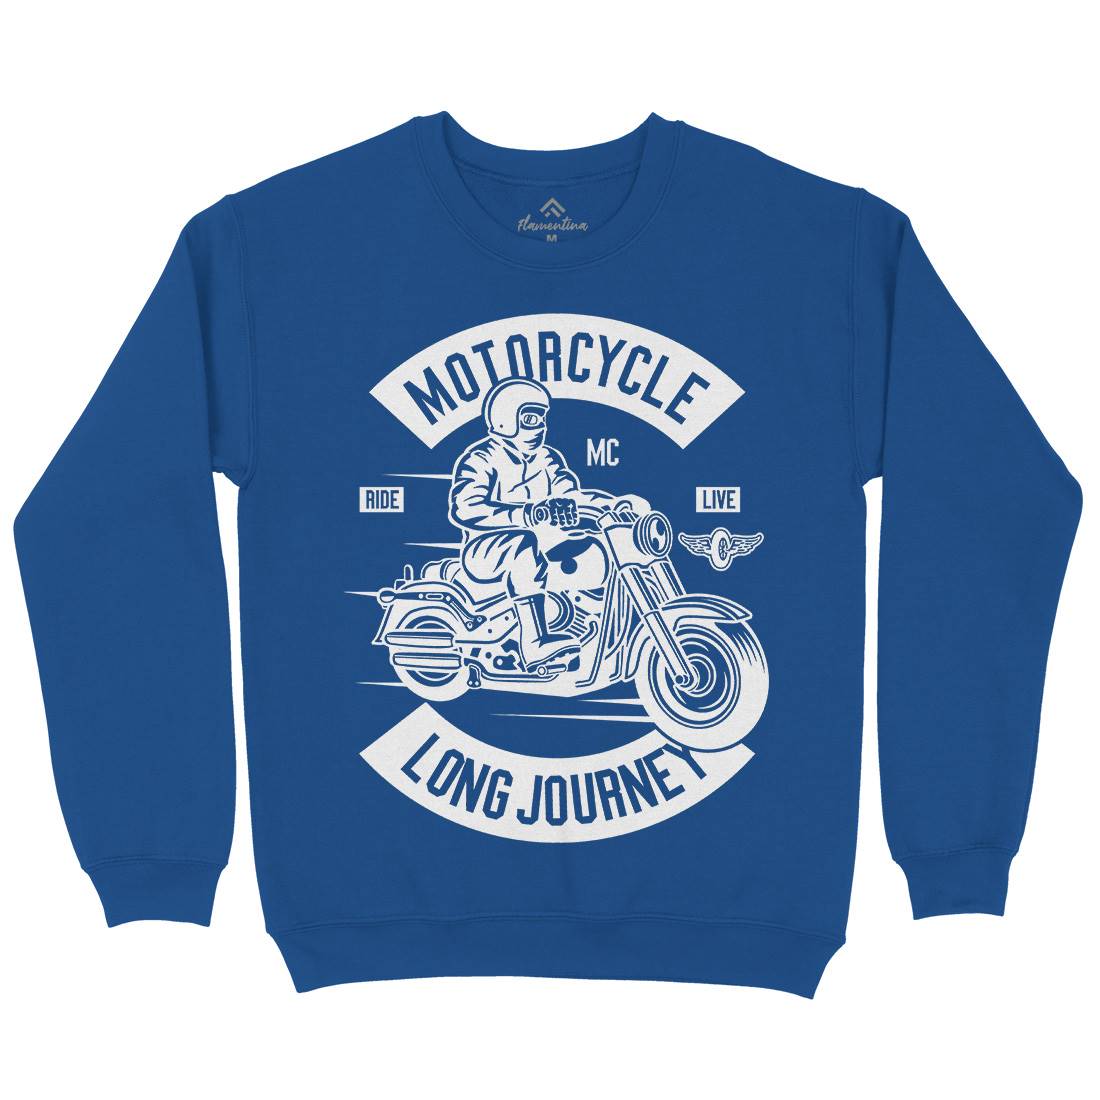 Long Journey Mens Crew Neck Sweatshirt Motorcycles B583